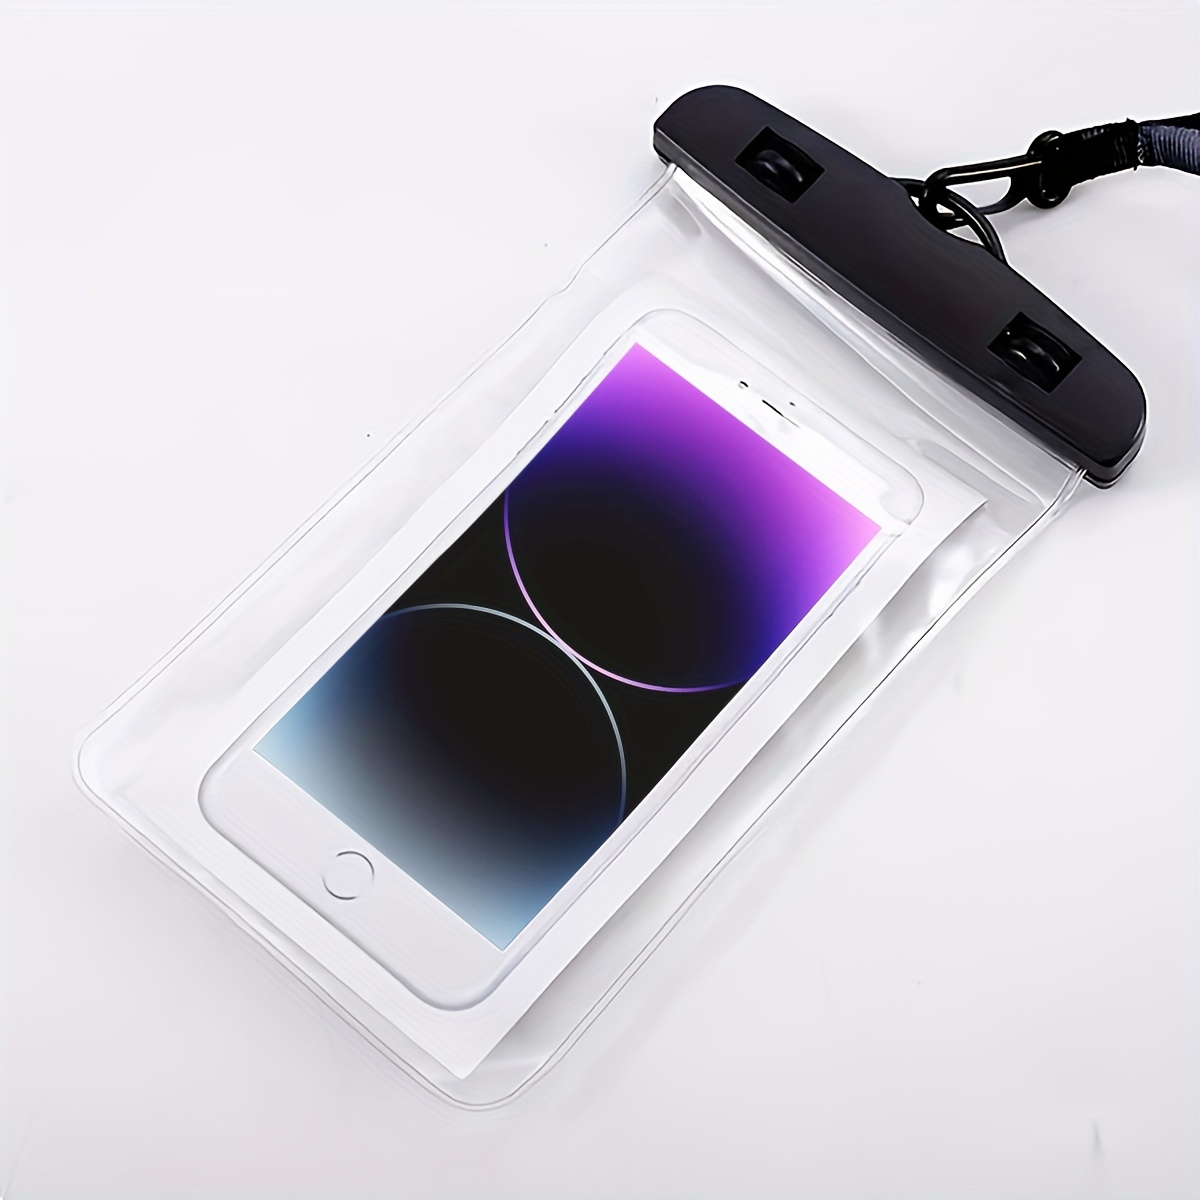 Funda impermeable universal mejorada, 2 bolsas impermeables para teléfono  móvil compatibles con teléfonos de 6,5 pulgadas (negro y azul)